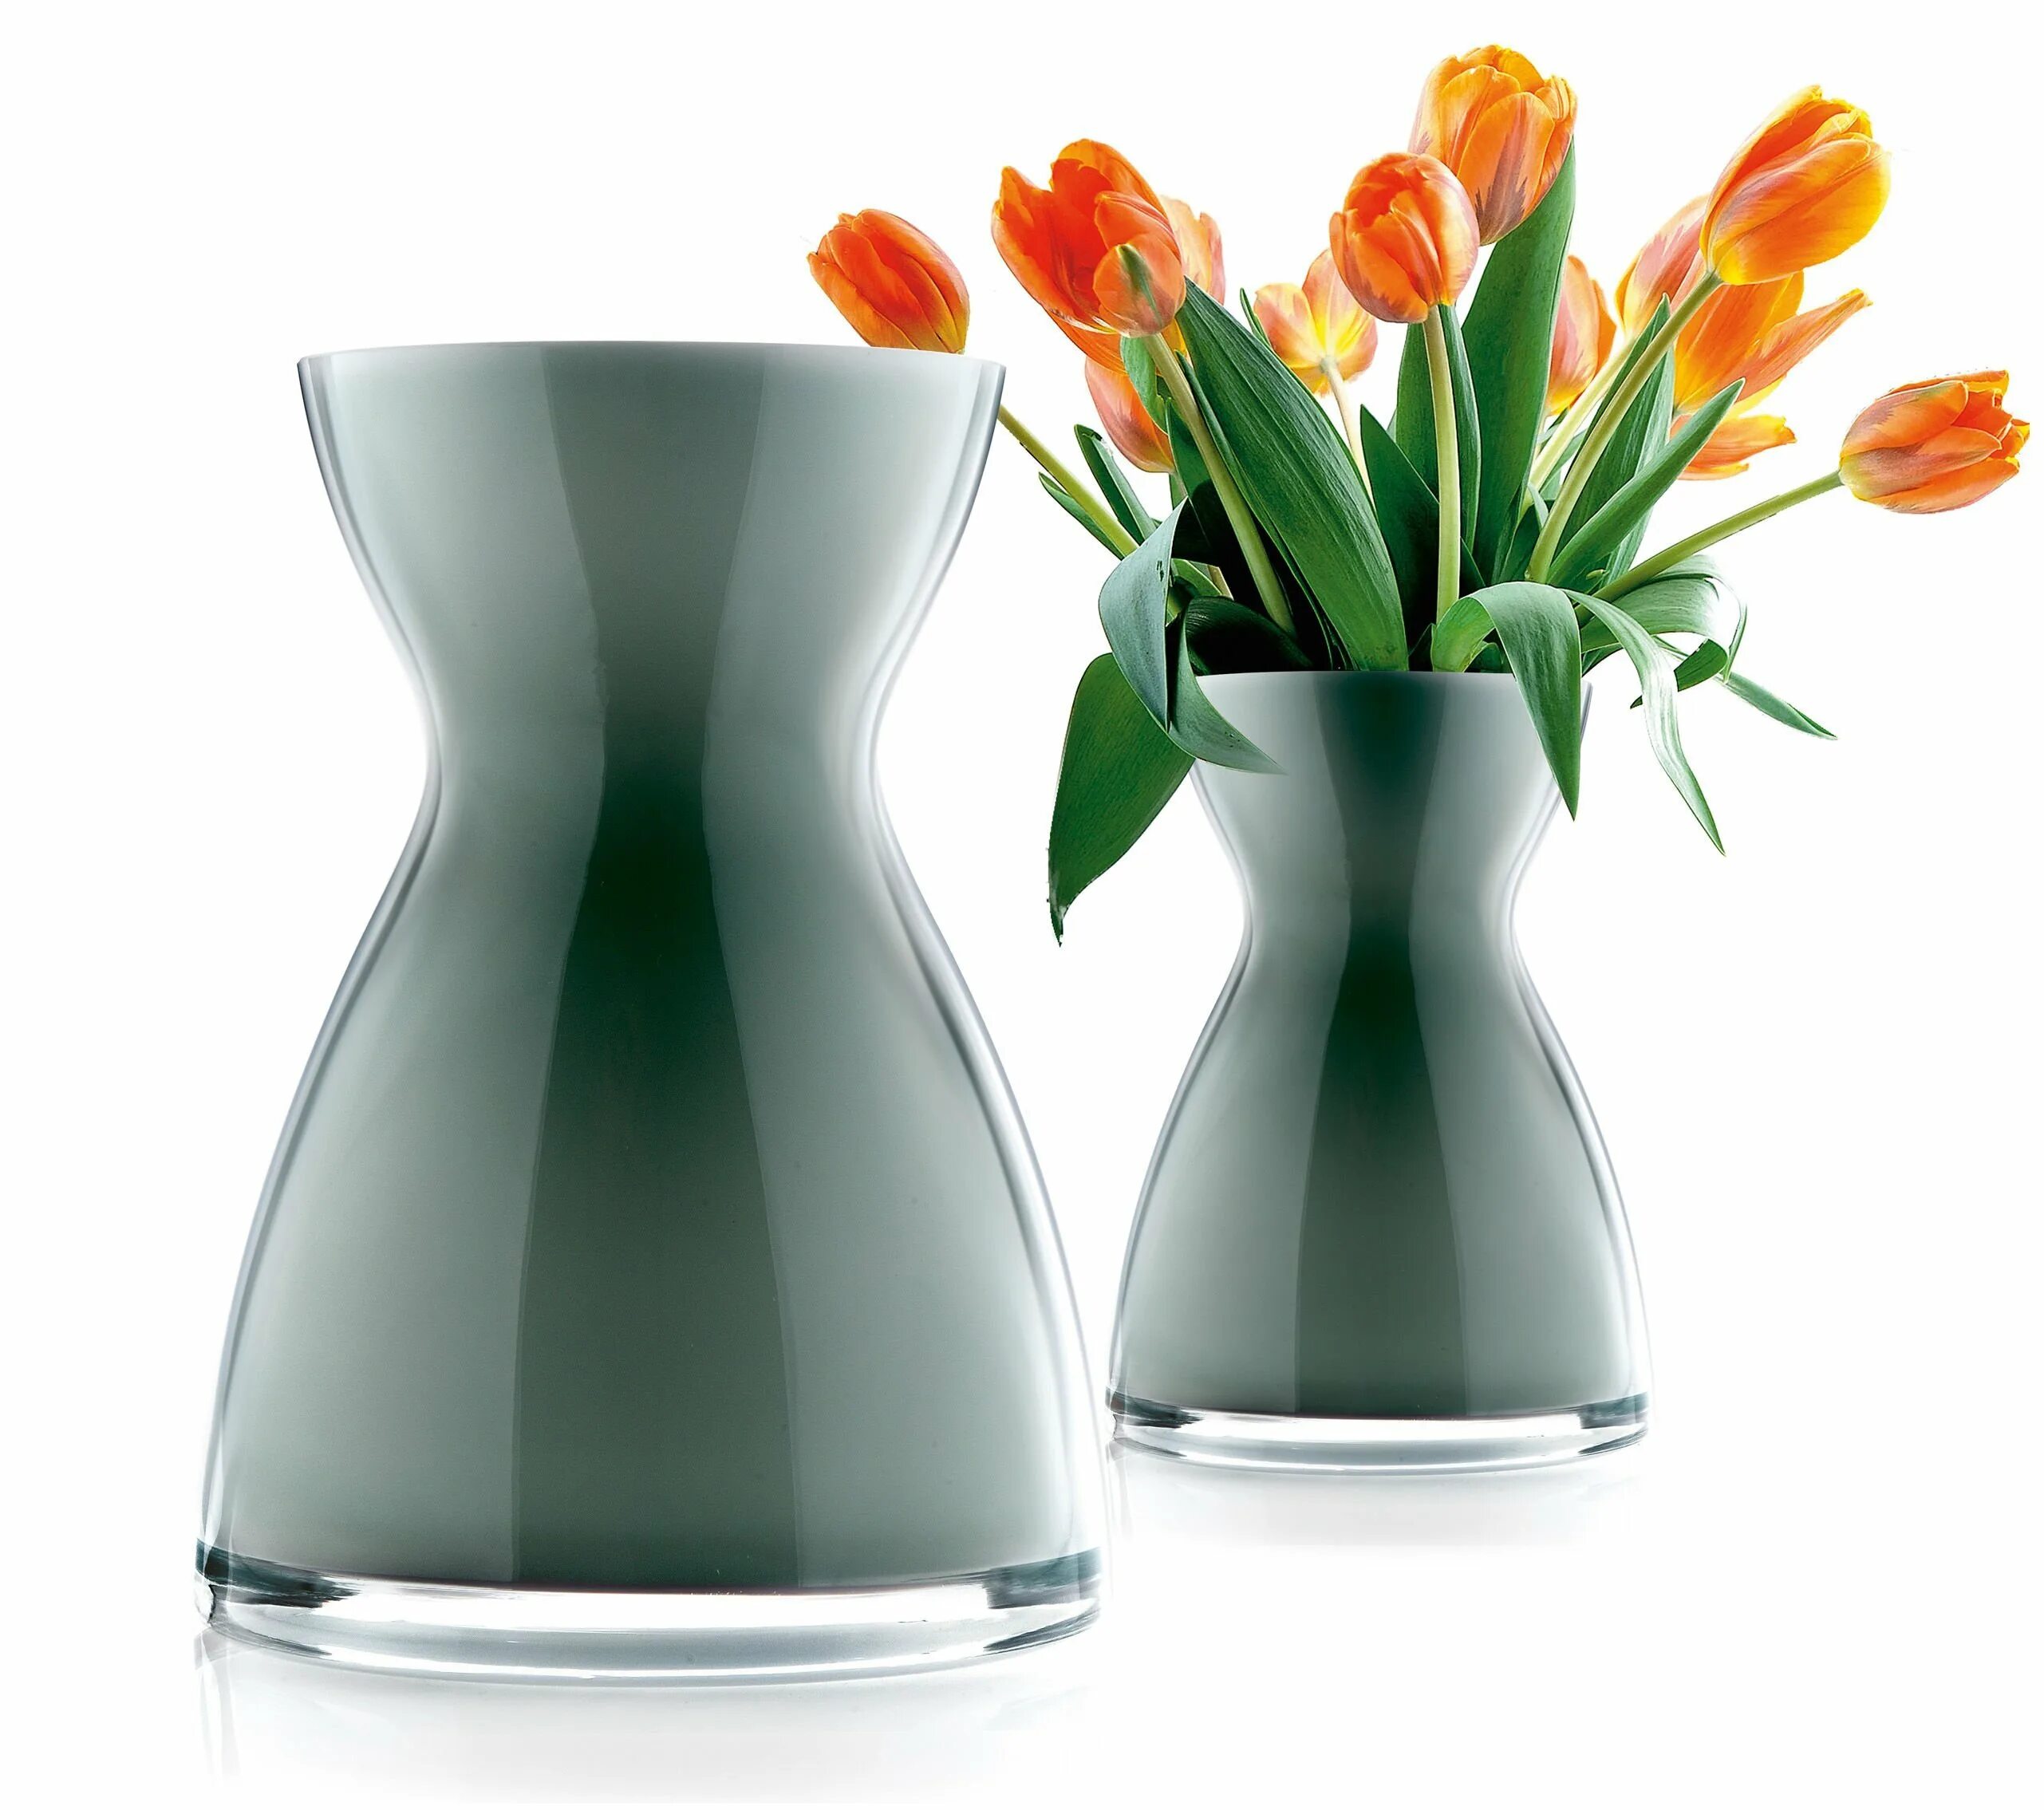 Florentine Vase Eva solo. Оригинальные вазы для цветов. Ваза для цветов. Необычные вазы. Куплю вазы в оригинале